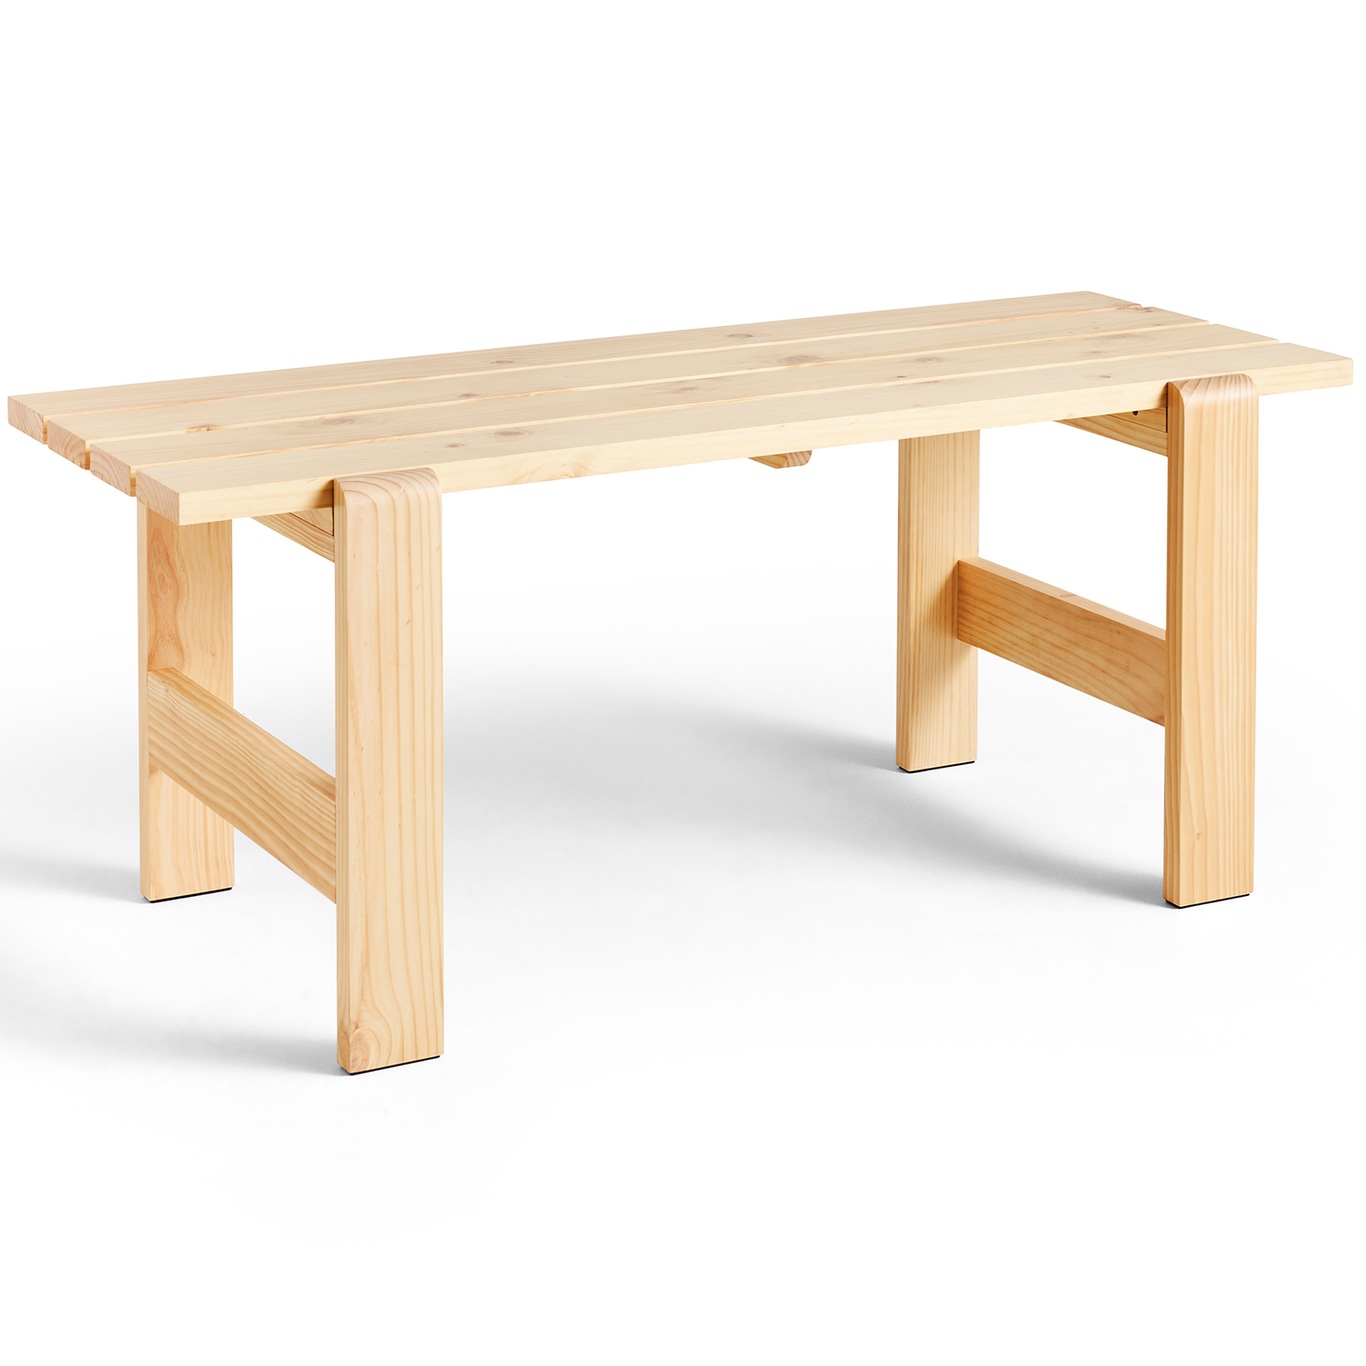 Weekday Pöytä 66x180 cm, Luonnollinen